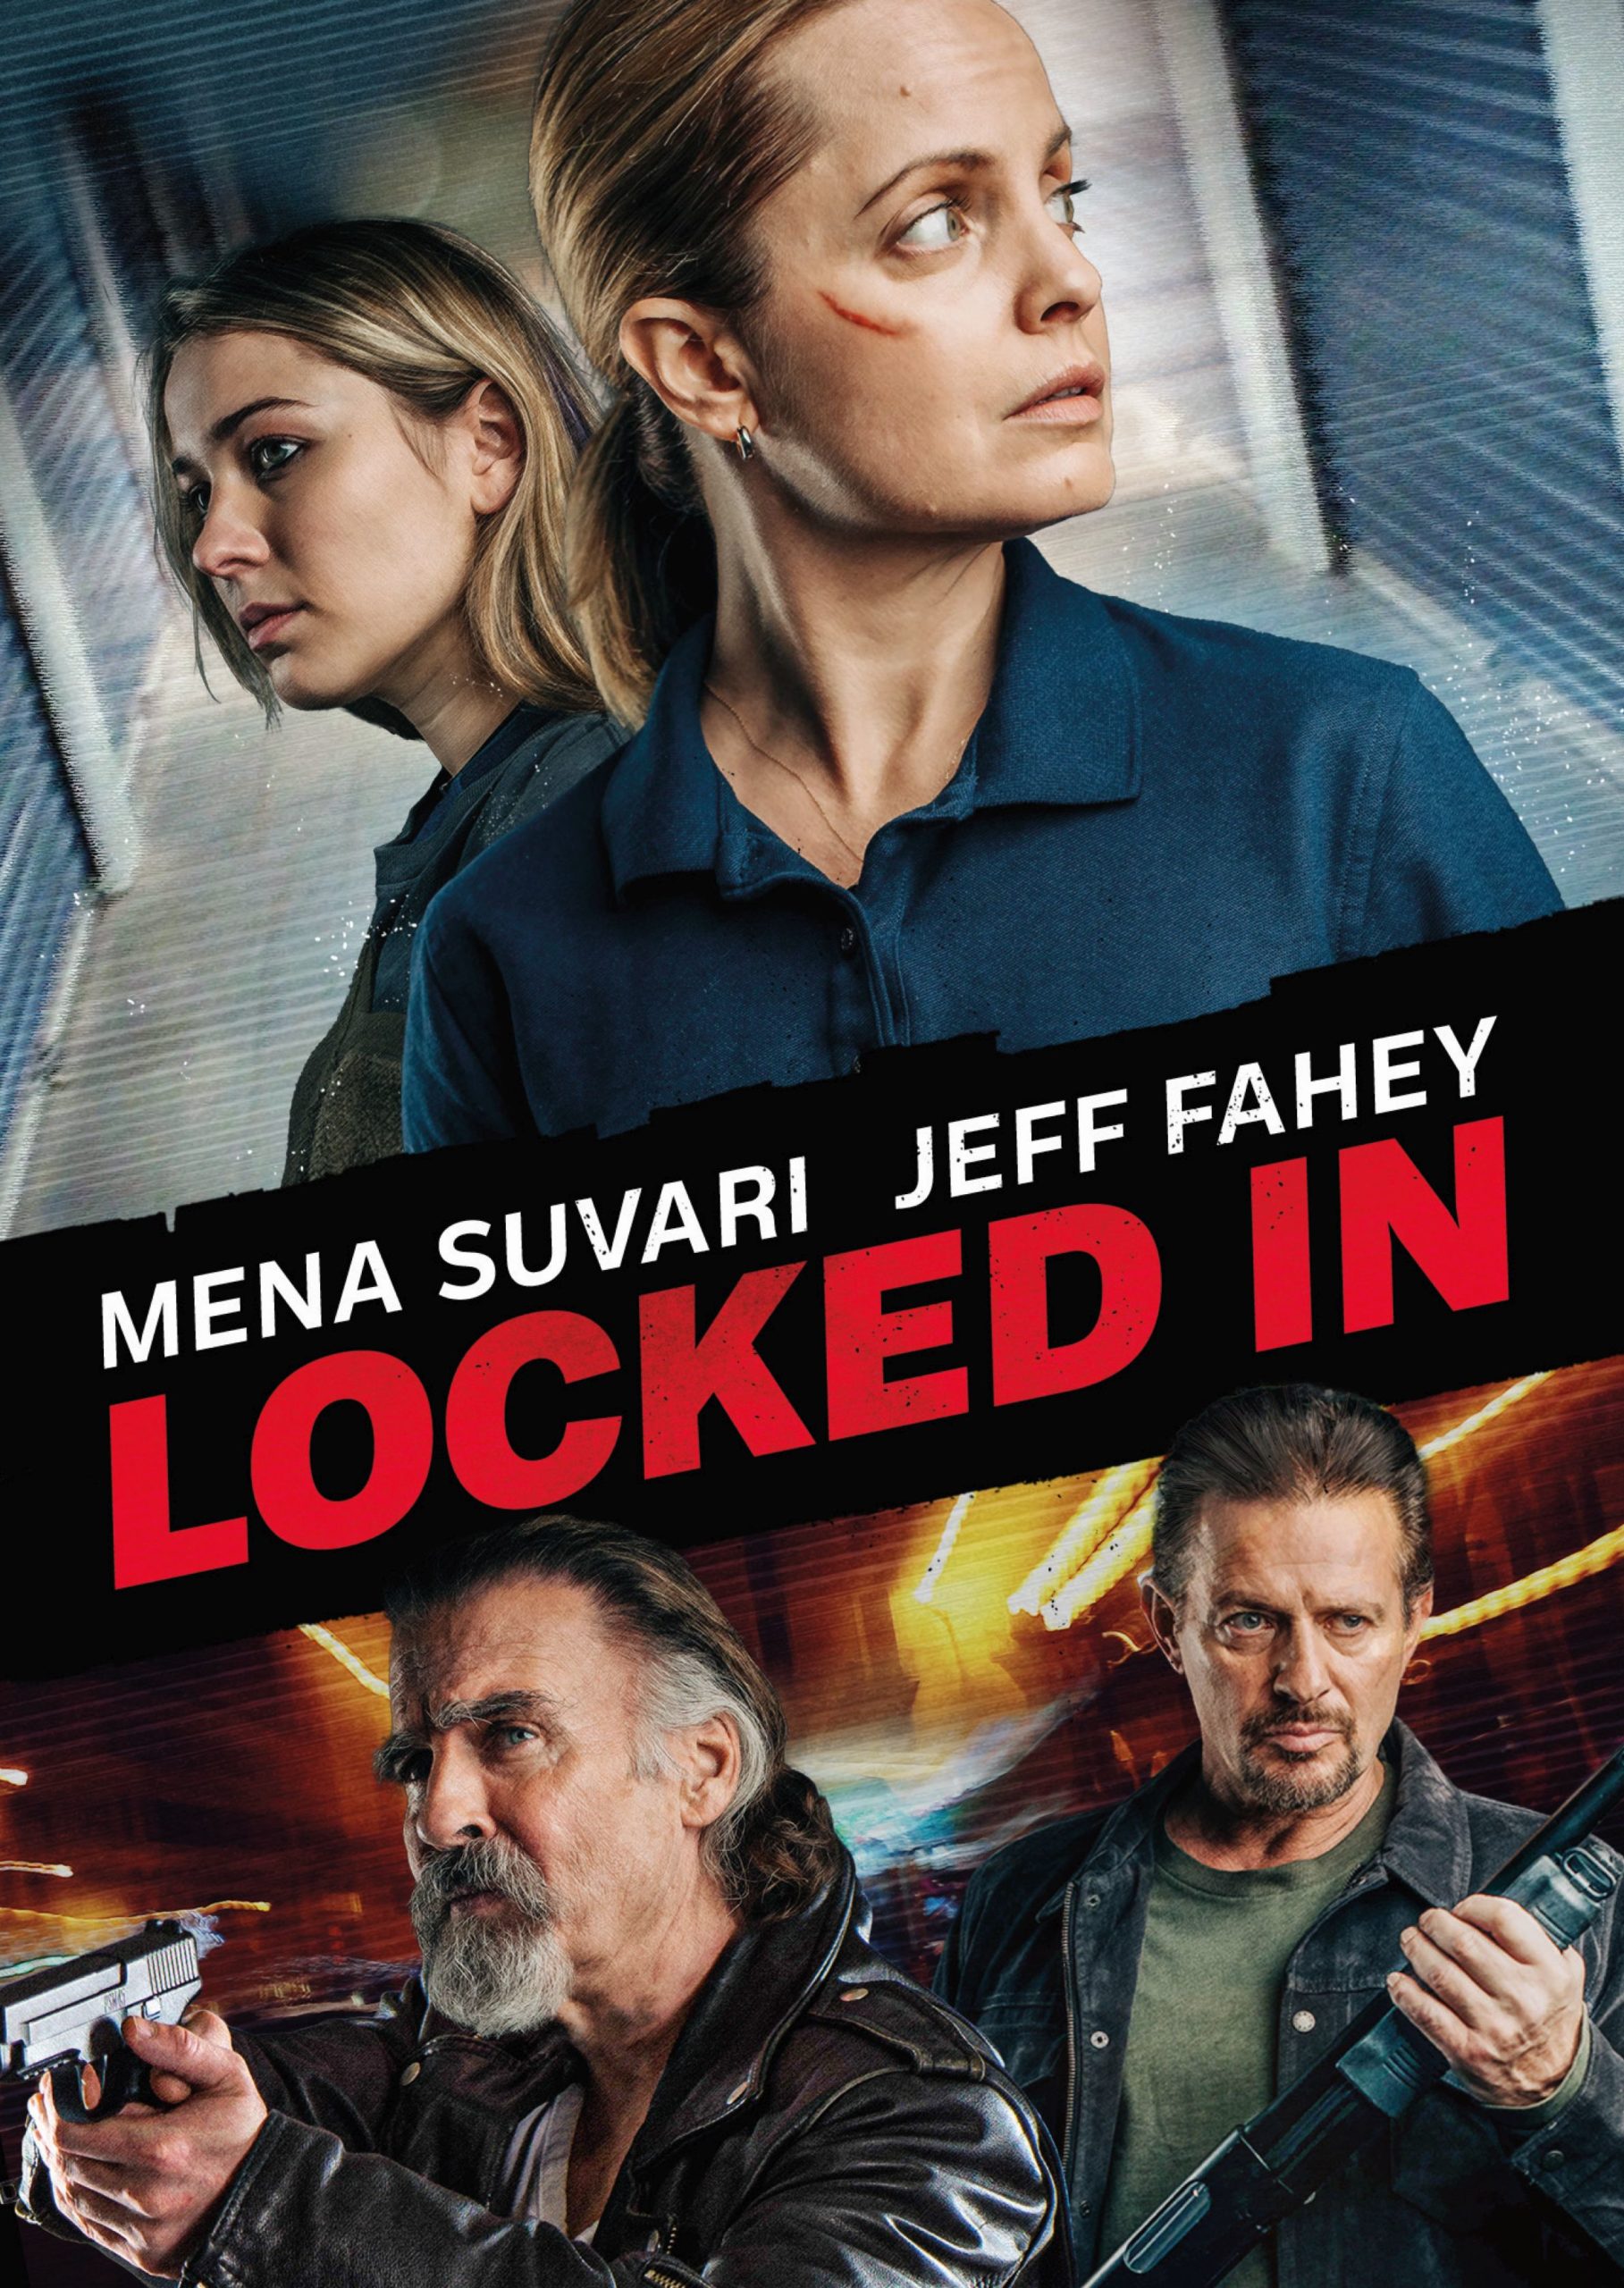 Locked In - Mean Suvari and Jeff Fahey